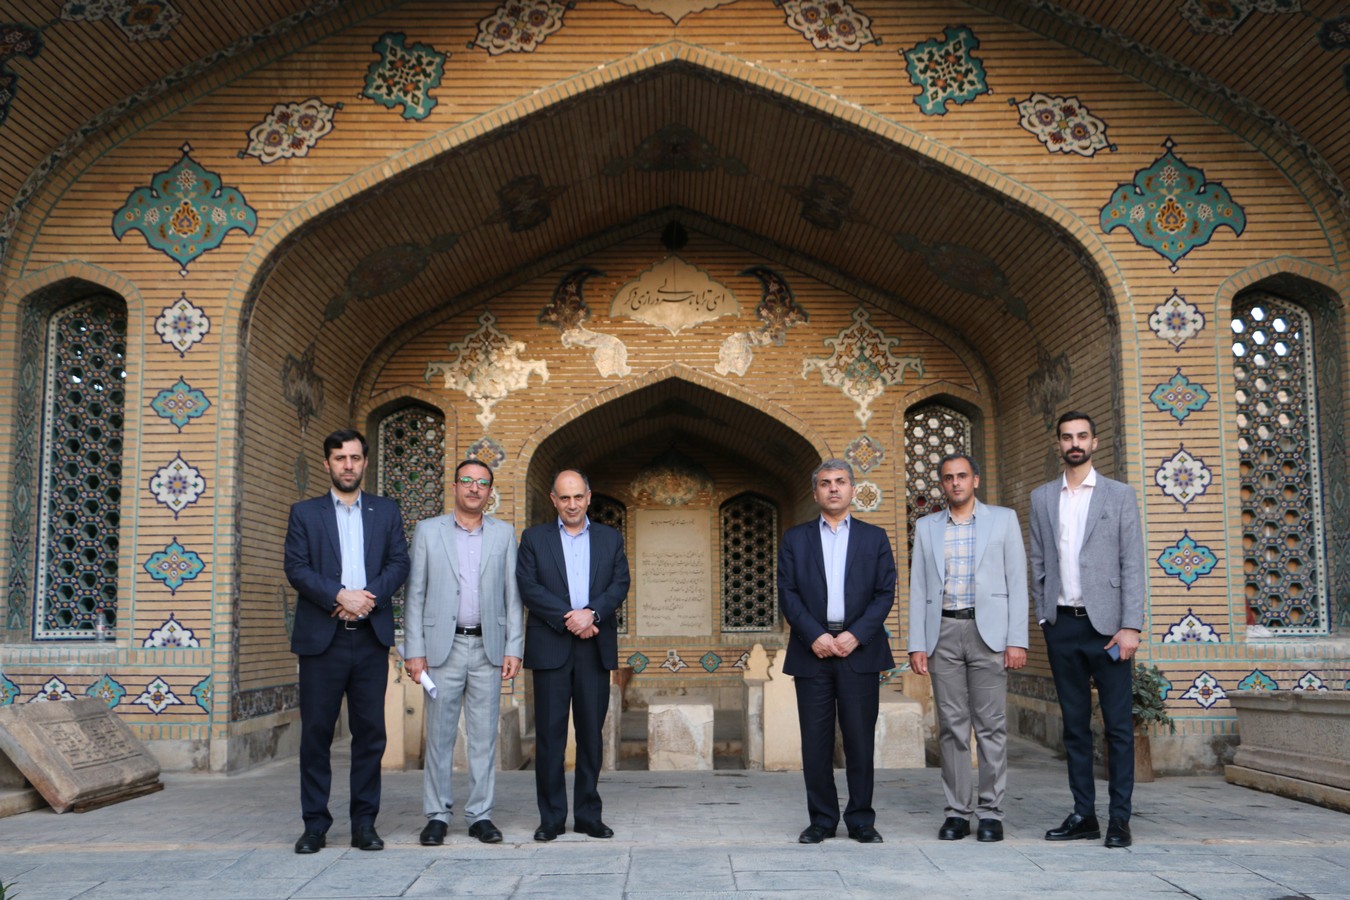 بازدید رییس انجمن آثار و مفاخر فرهنگی از آرامگاه «روزبهان بقلی فسایی» در شیراز